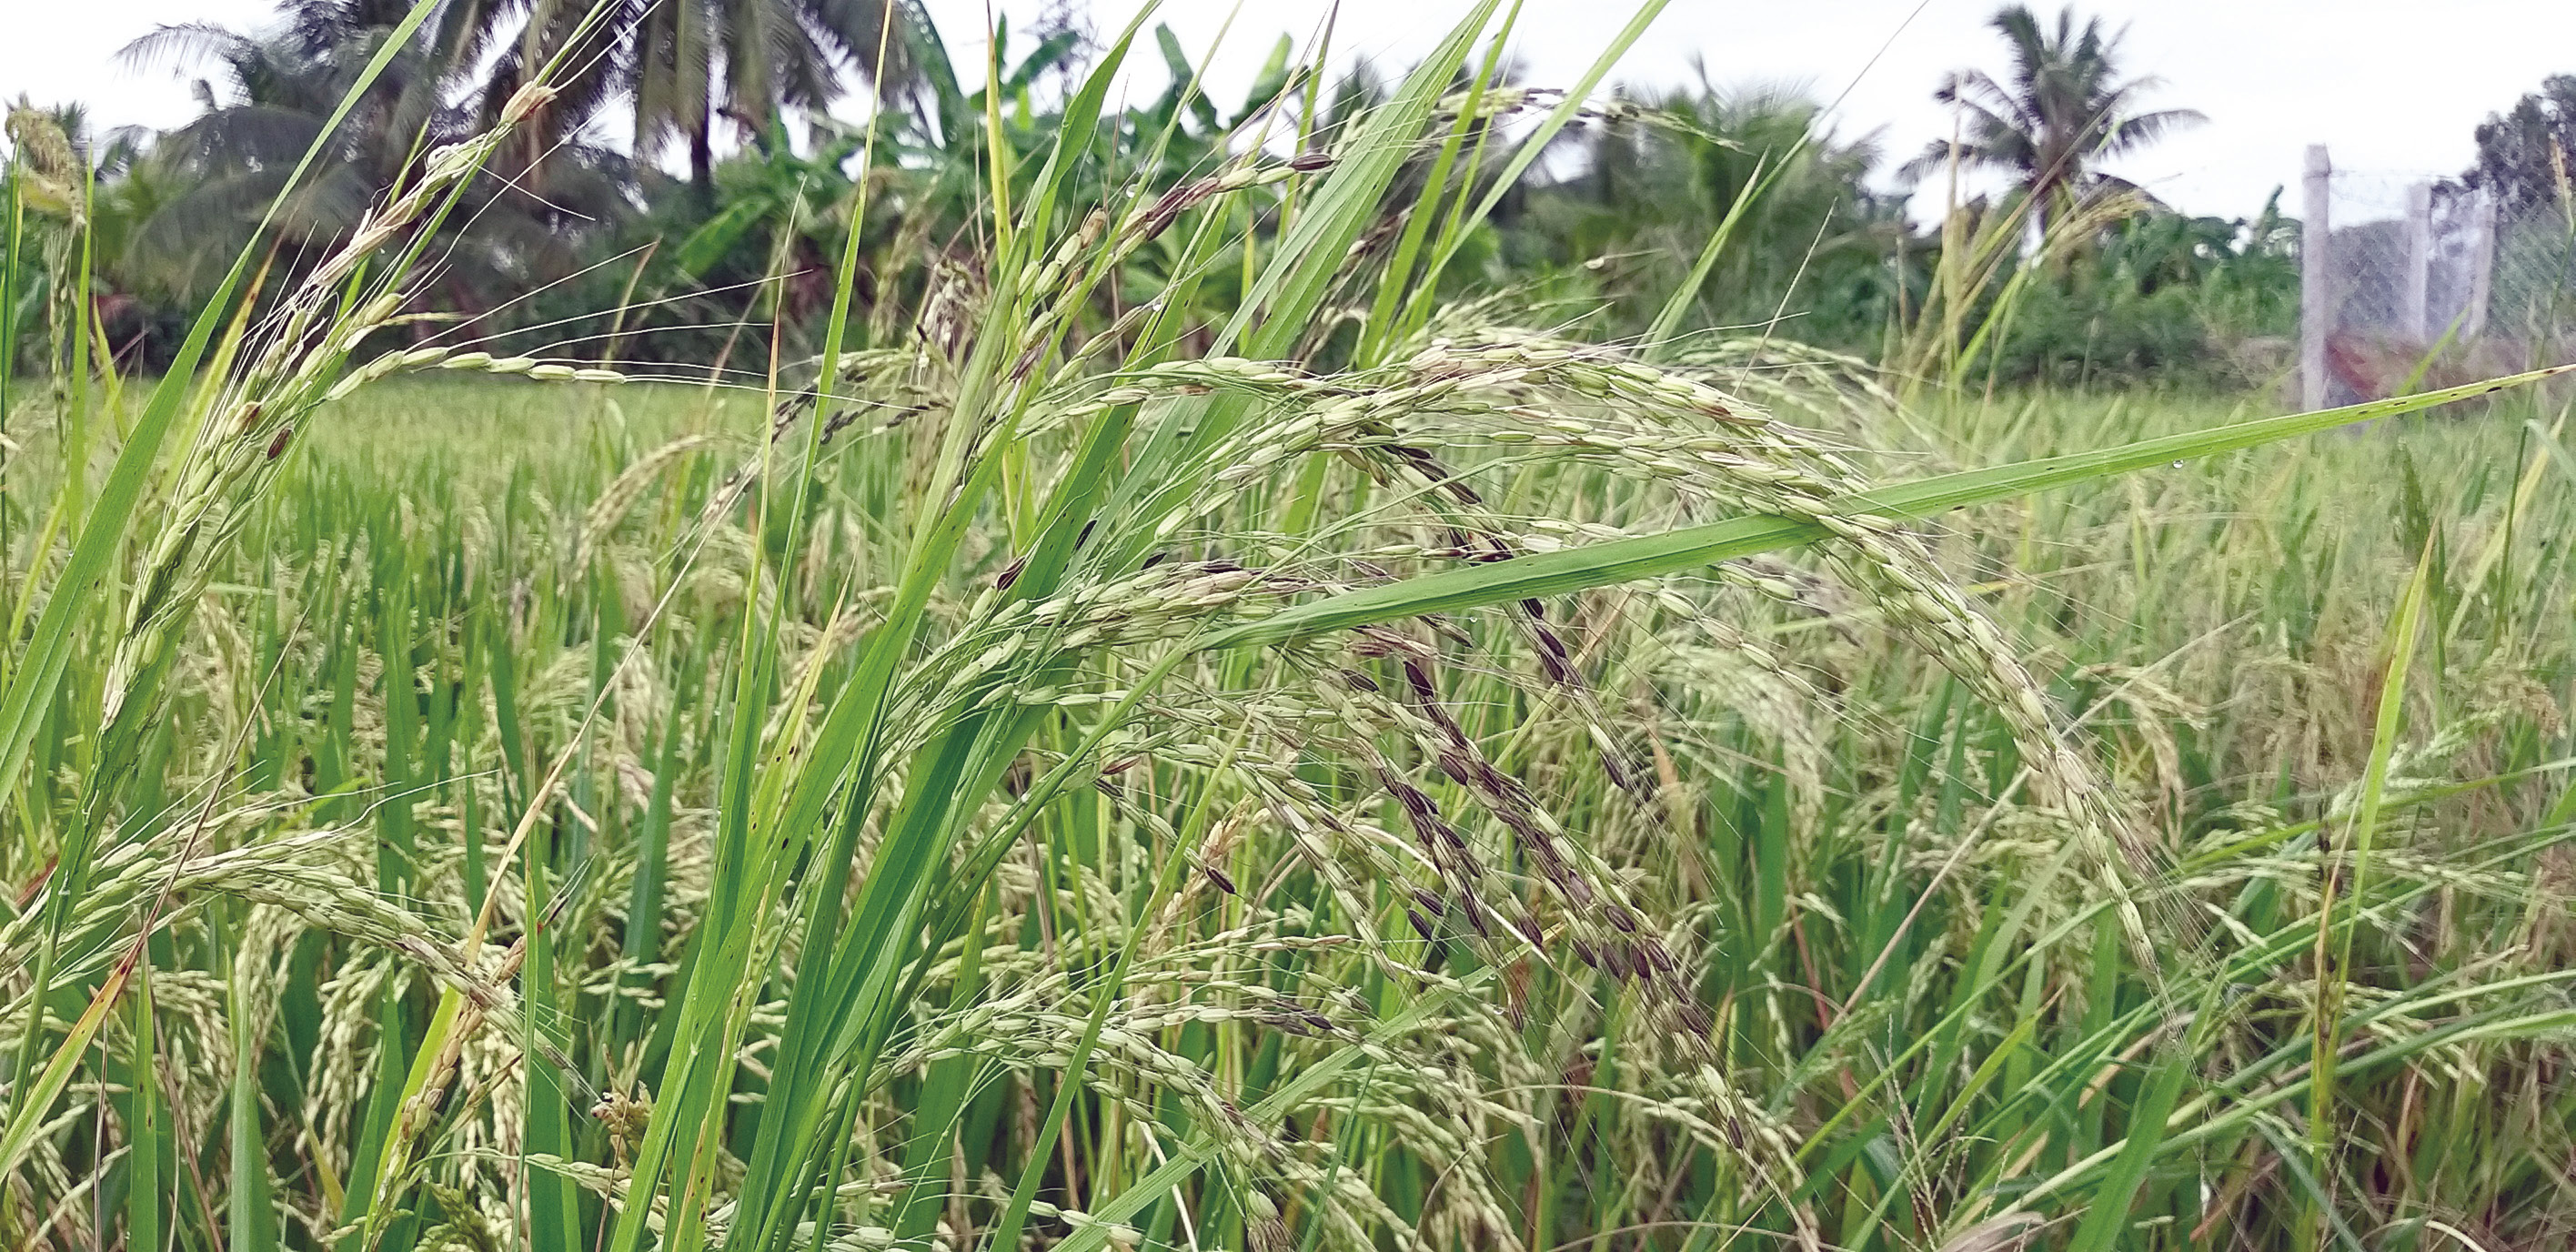 Lãnh đạo huyện Cái Bè kiểm tra tình hình dịch bệnh trên cây lúa « Đài Phát  thanh – Truyền hình Tiền Giang